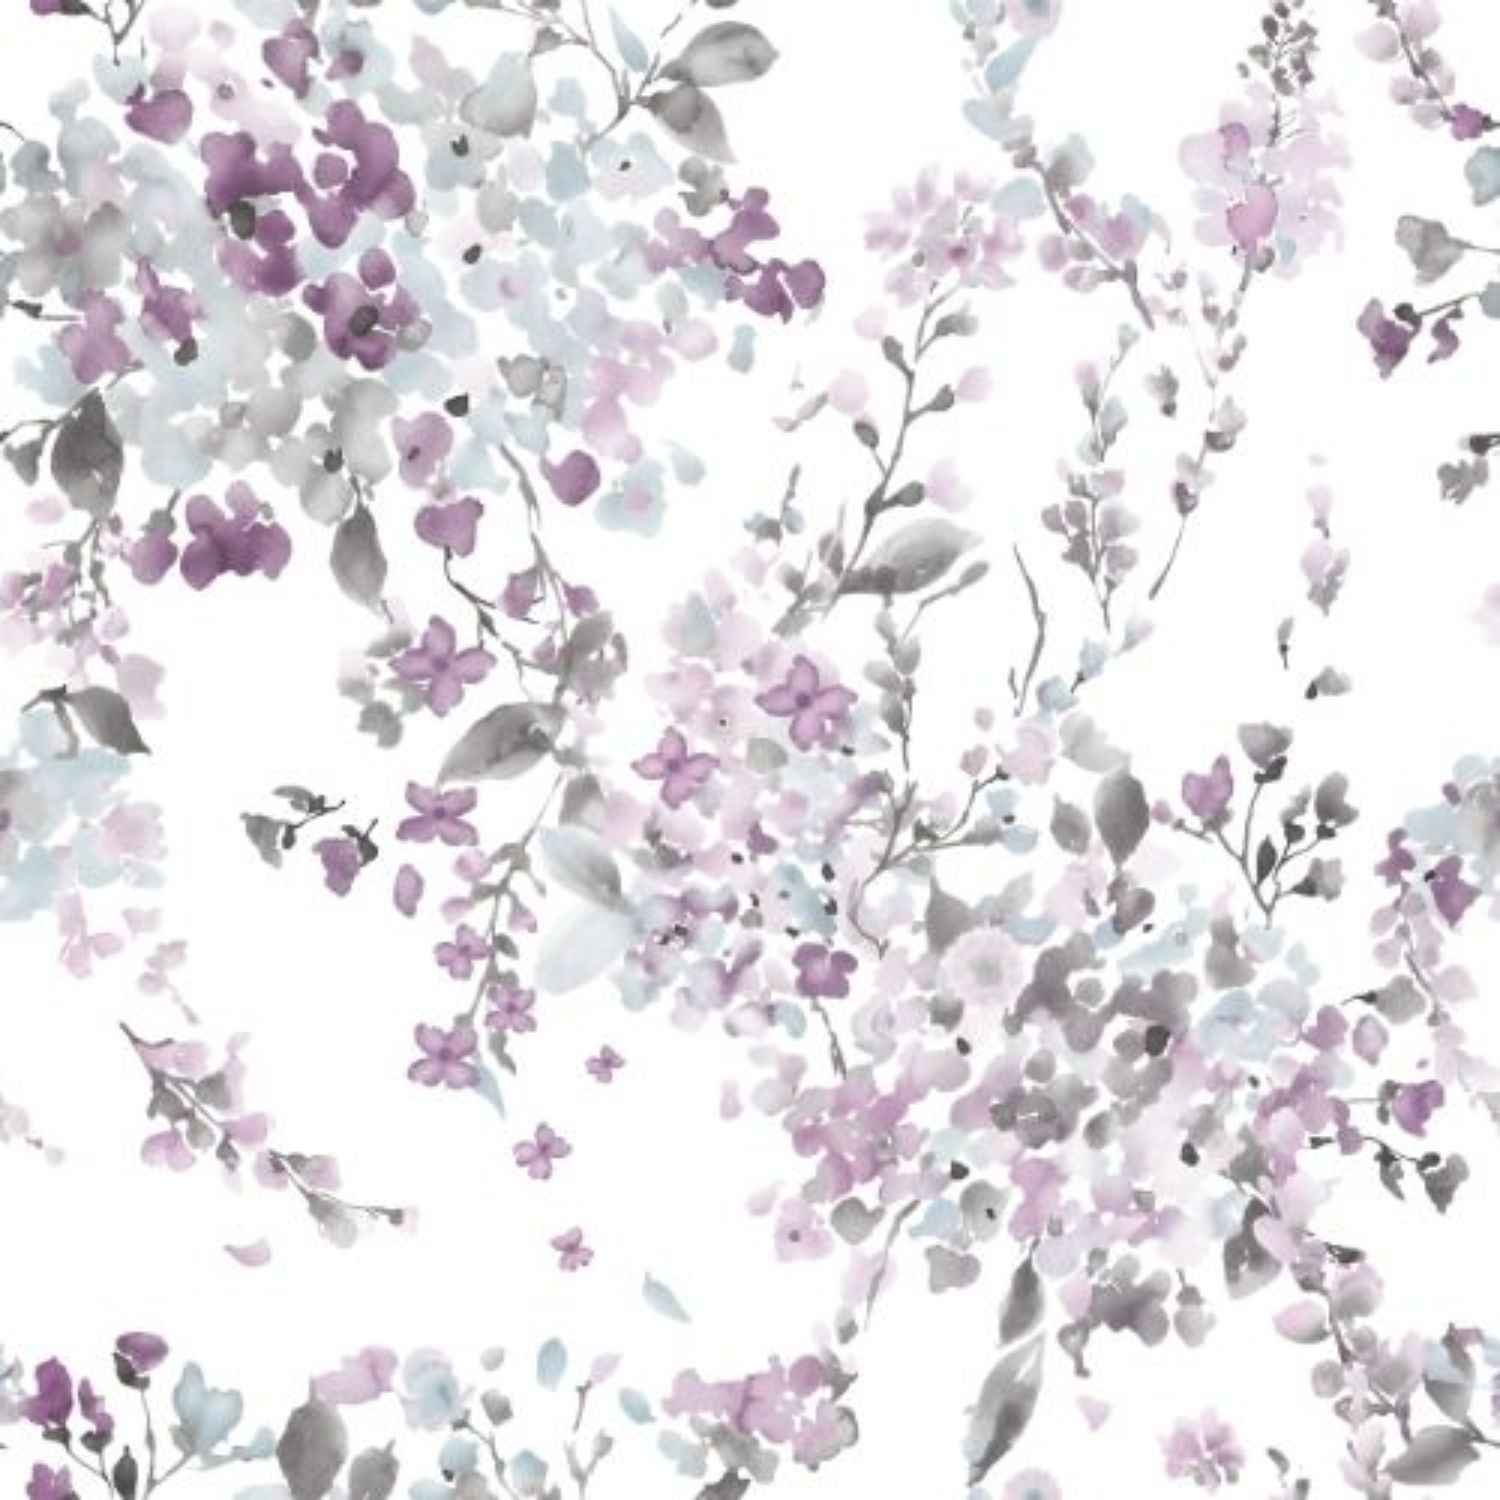 telo-arredo-copritutto-acquerello-tuttofare-fiorato-piccolo-bianco-grigio-lilla-rosa-pattern